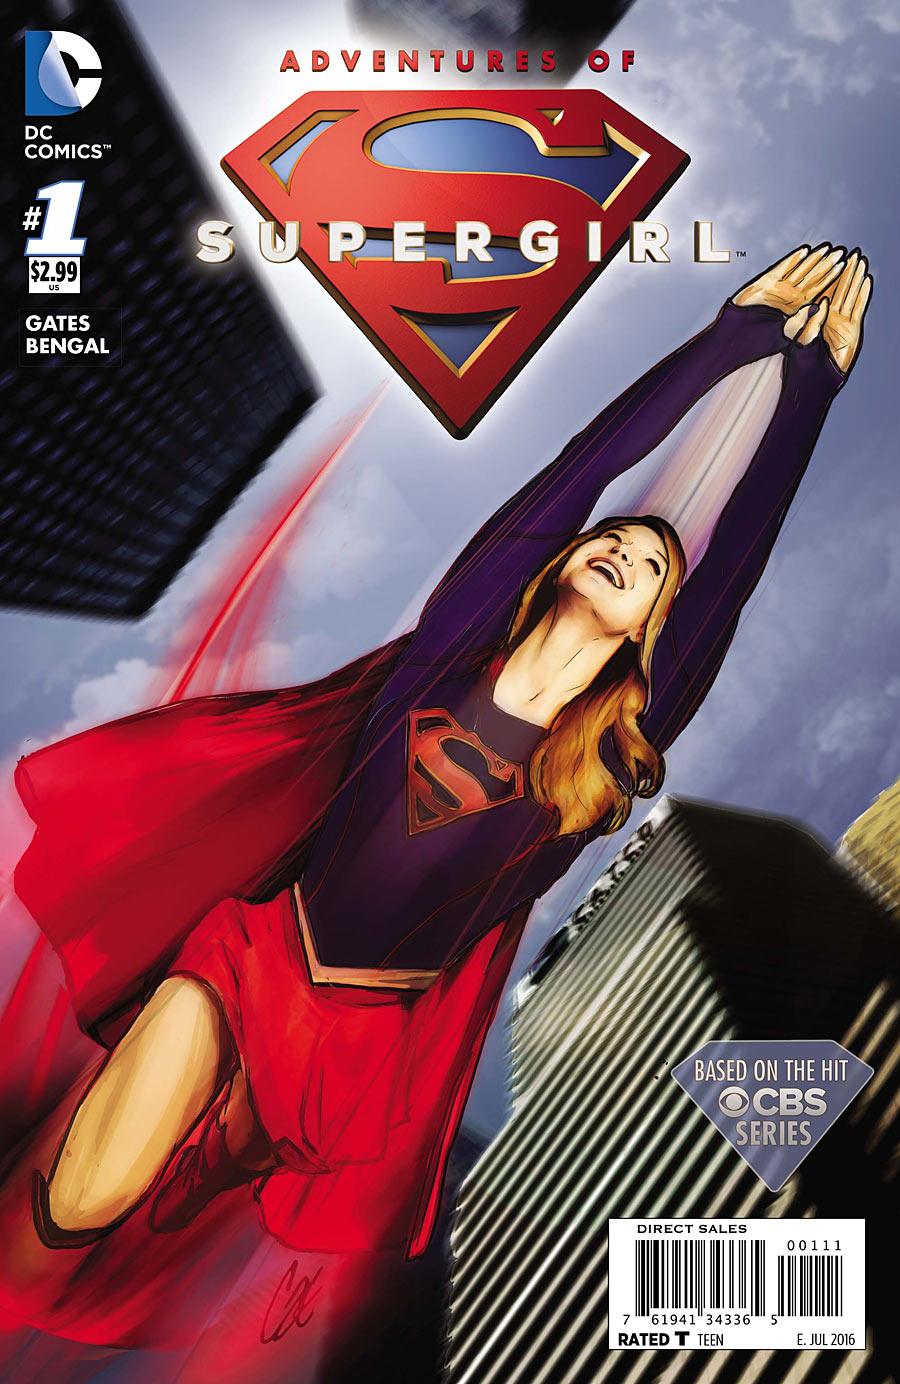 Adventures of Supergirl Vol. 1 #1